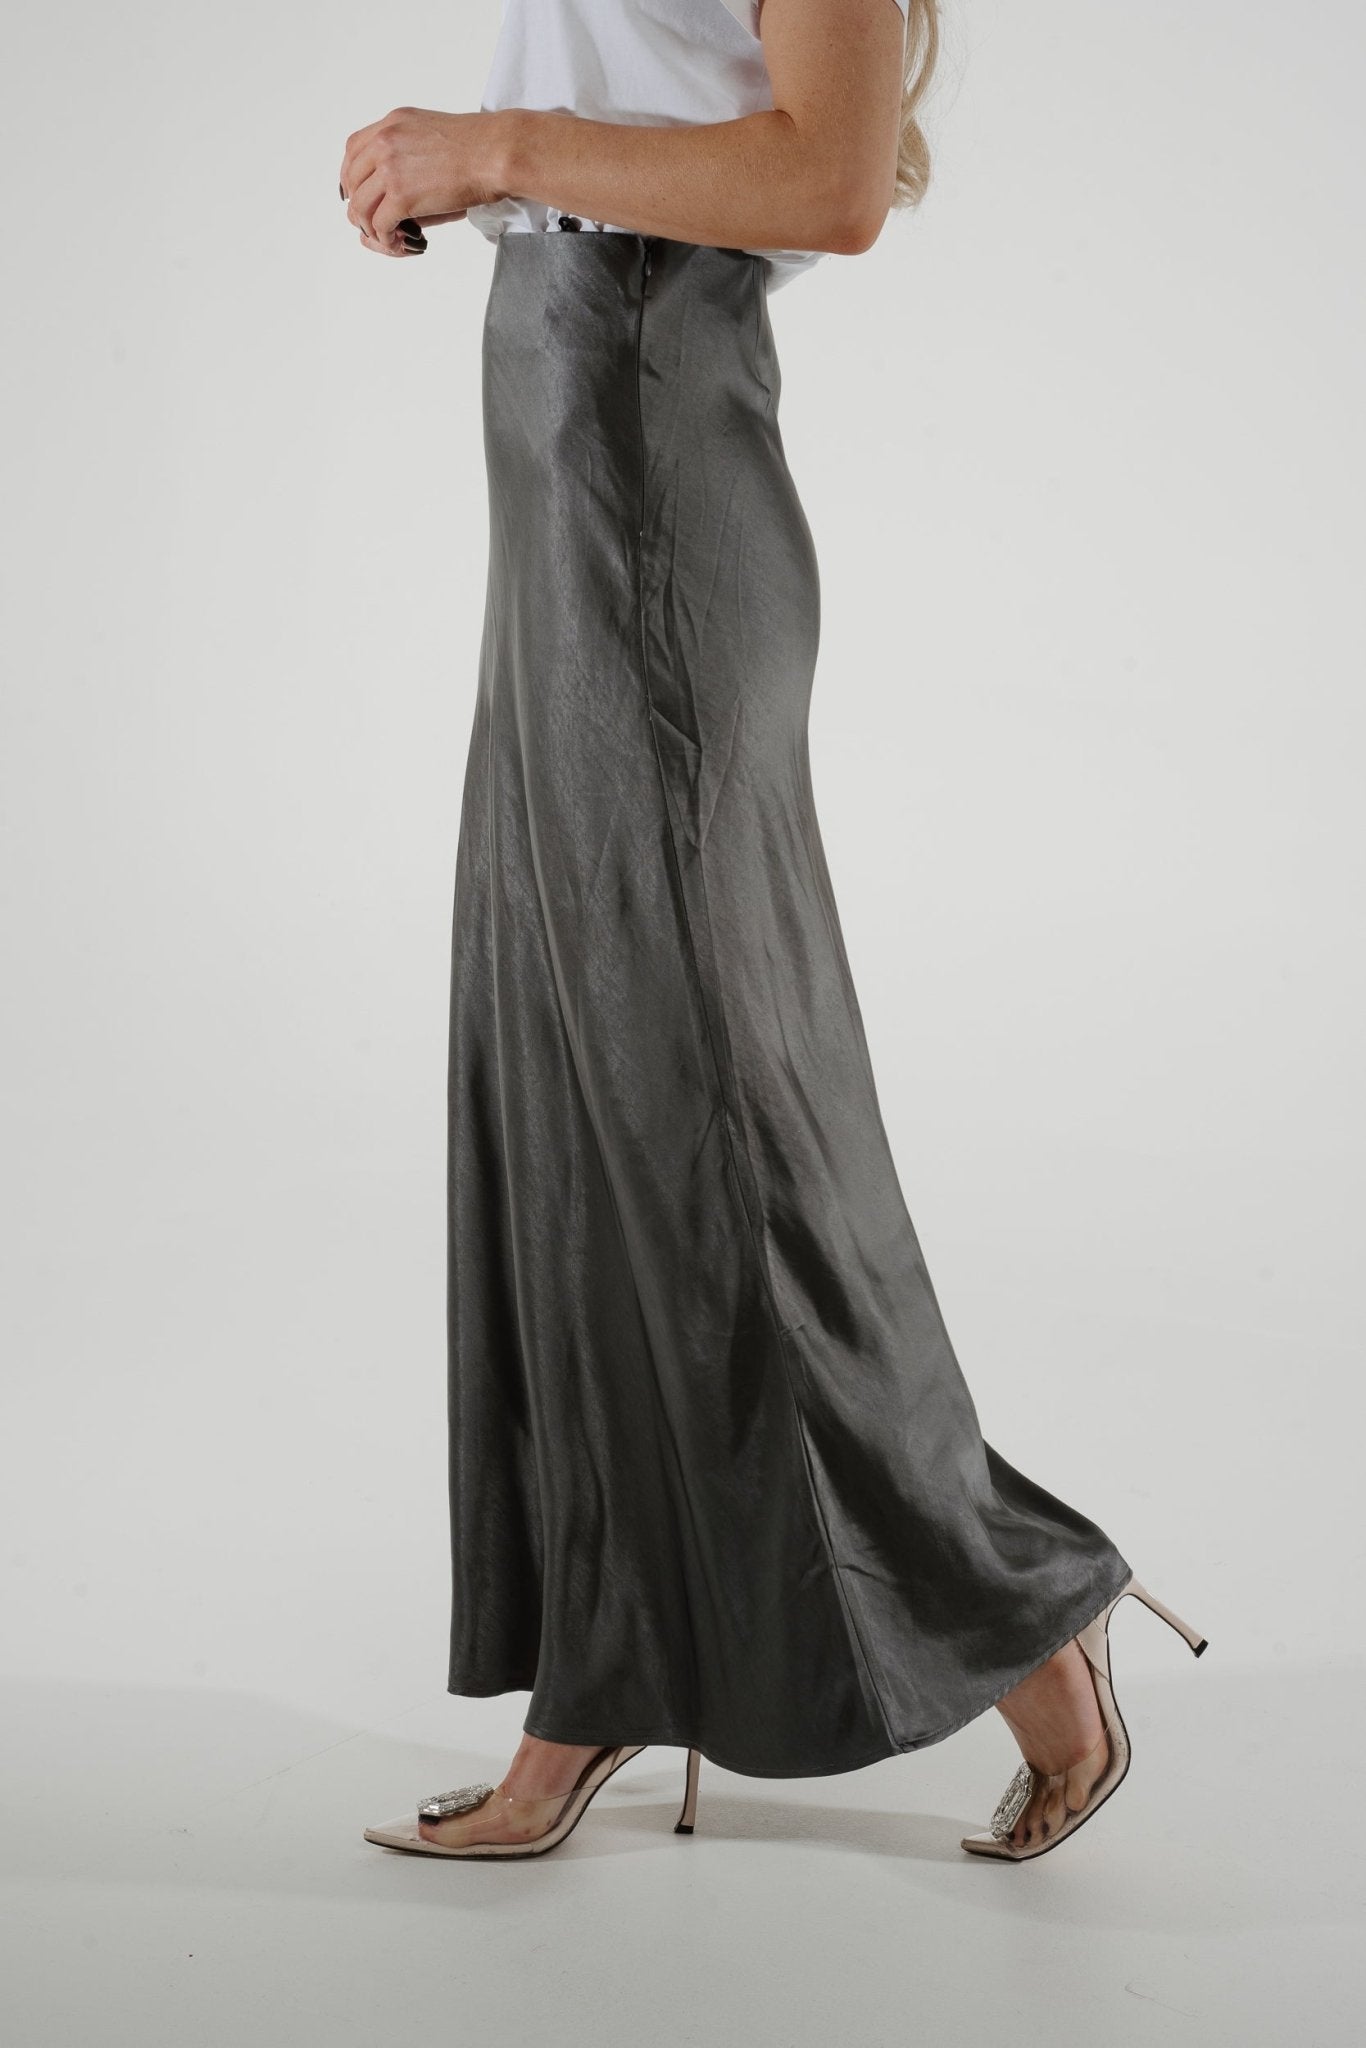 Jane Longline Satin Skirt In Grey - The Walk in Wardrobe